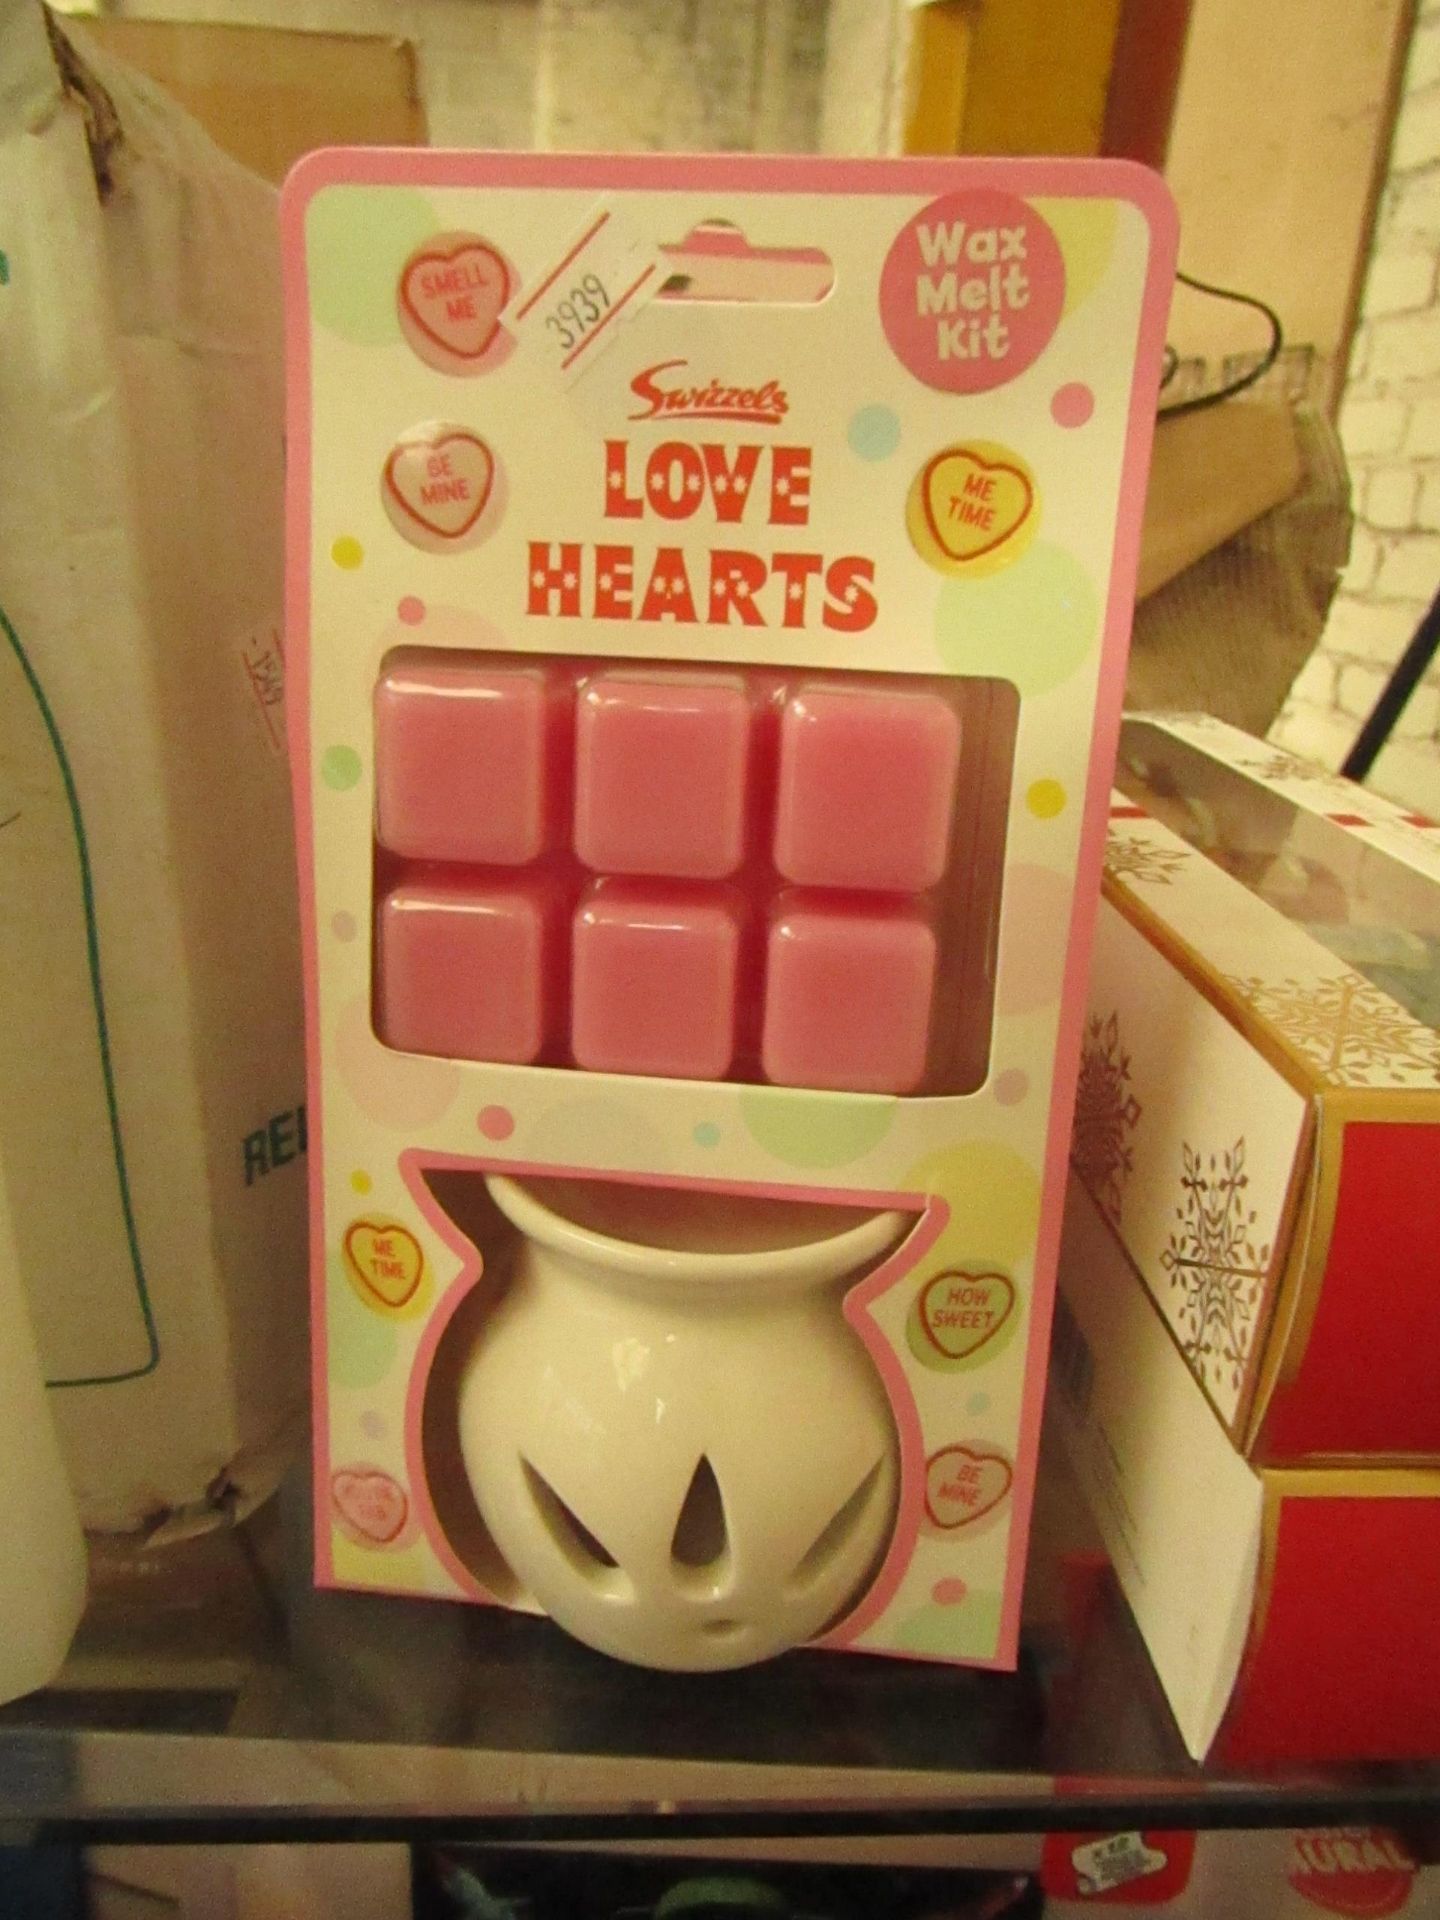 Swizzels - Love Hearts - Wax Melt Kit - Packaged.